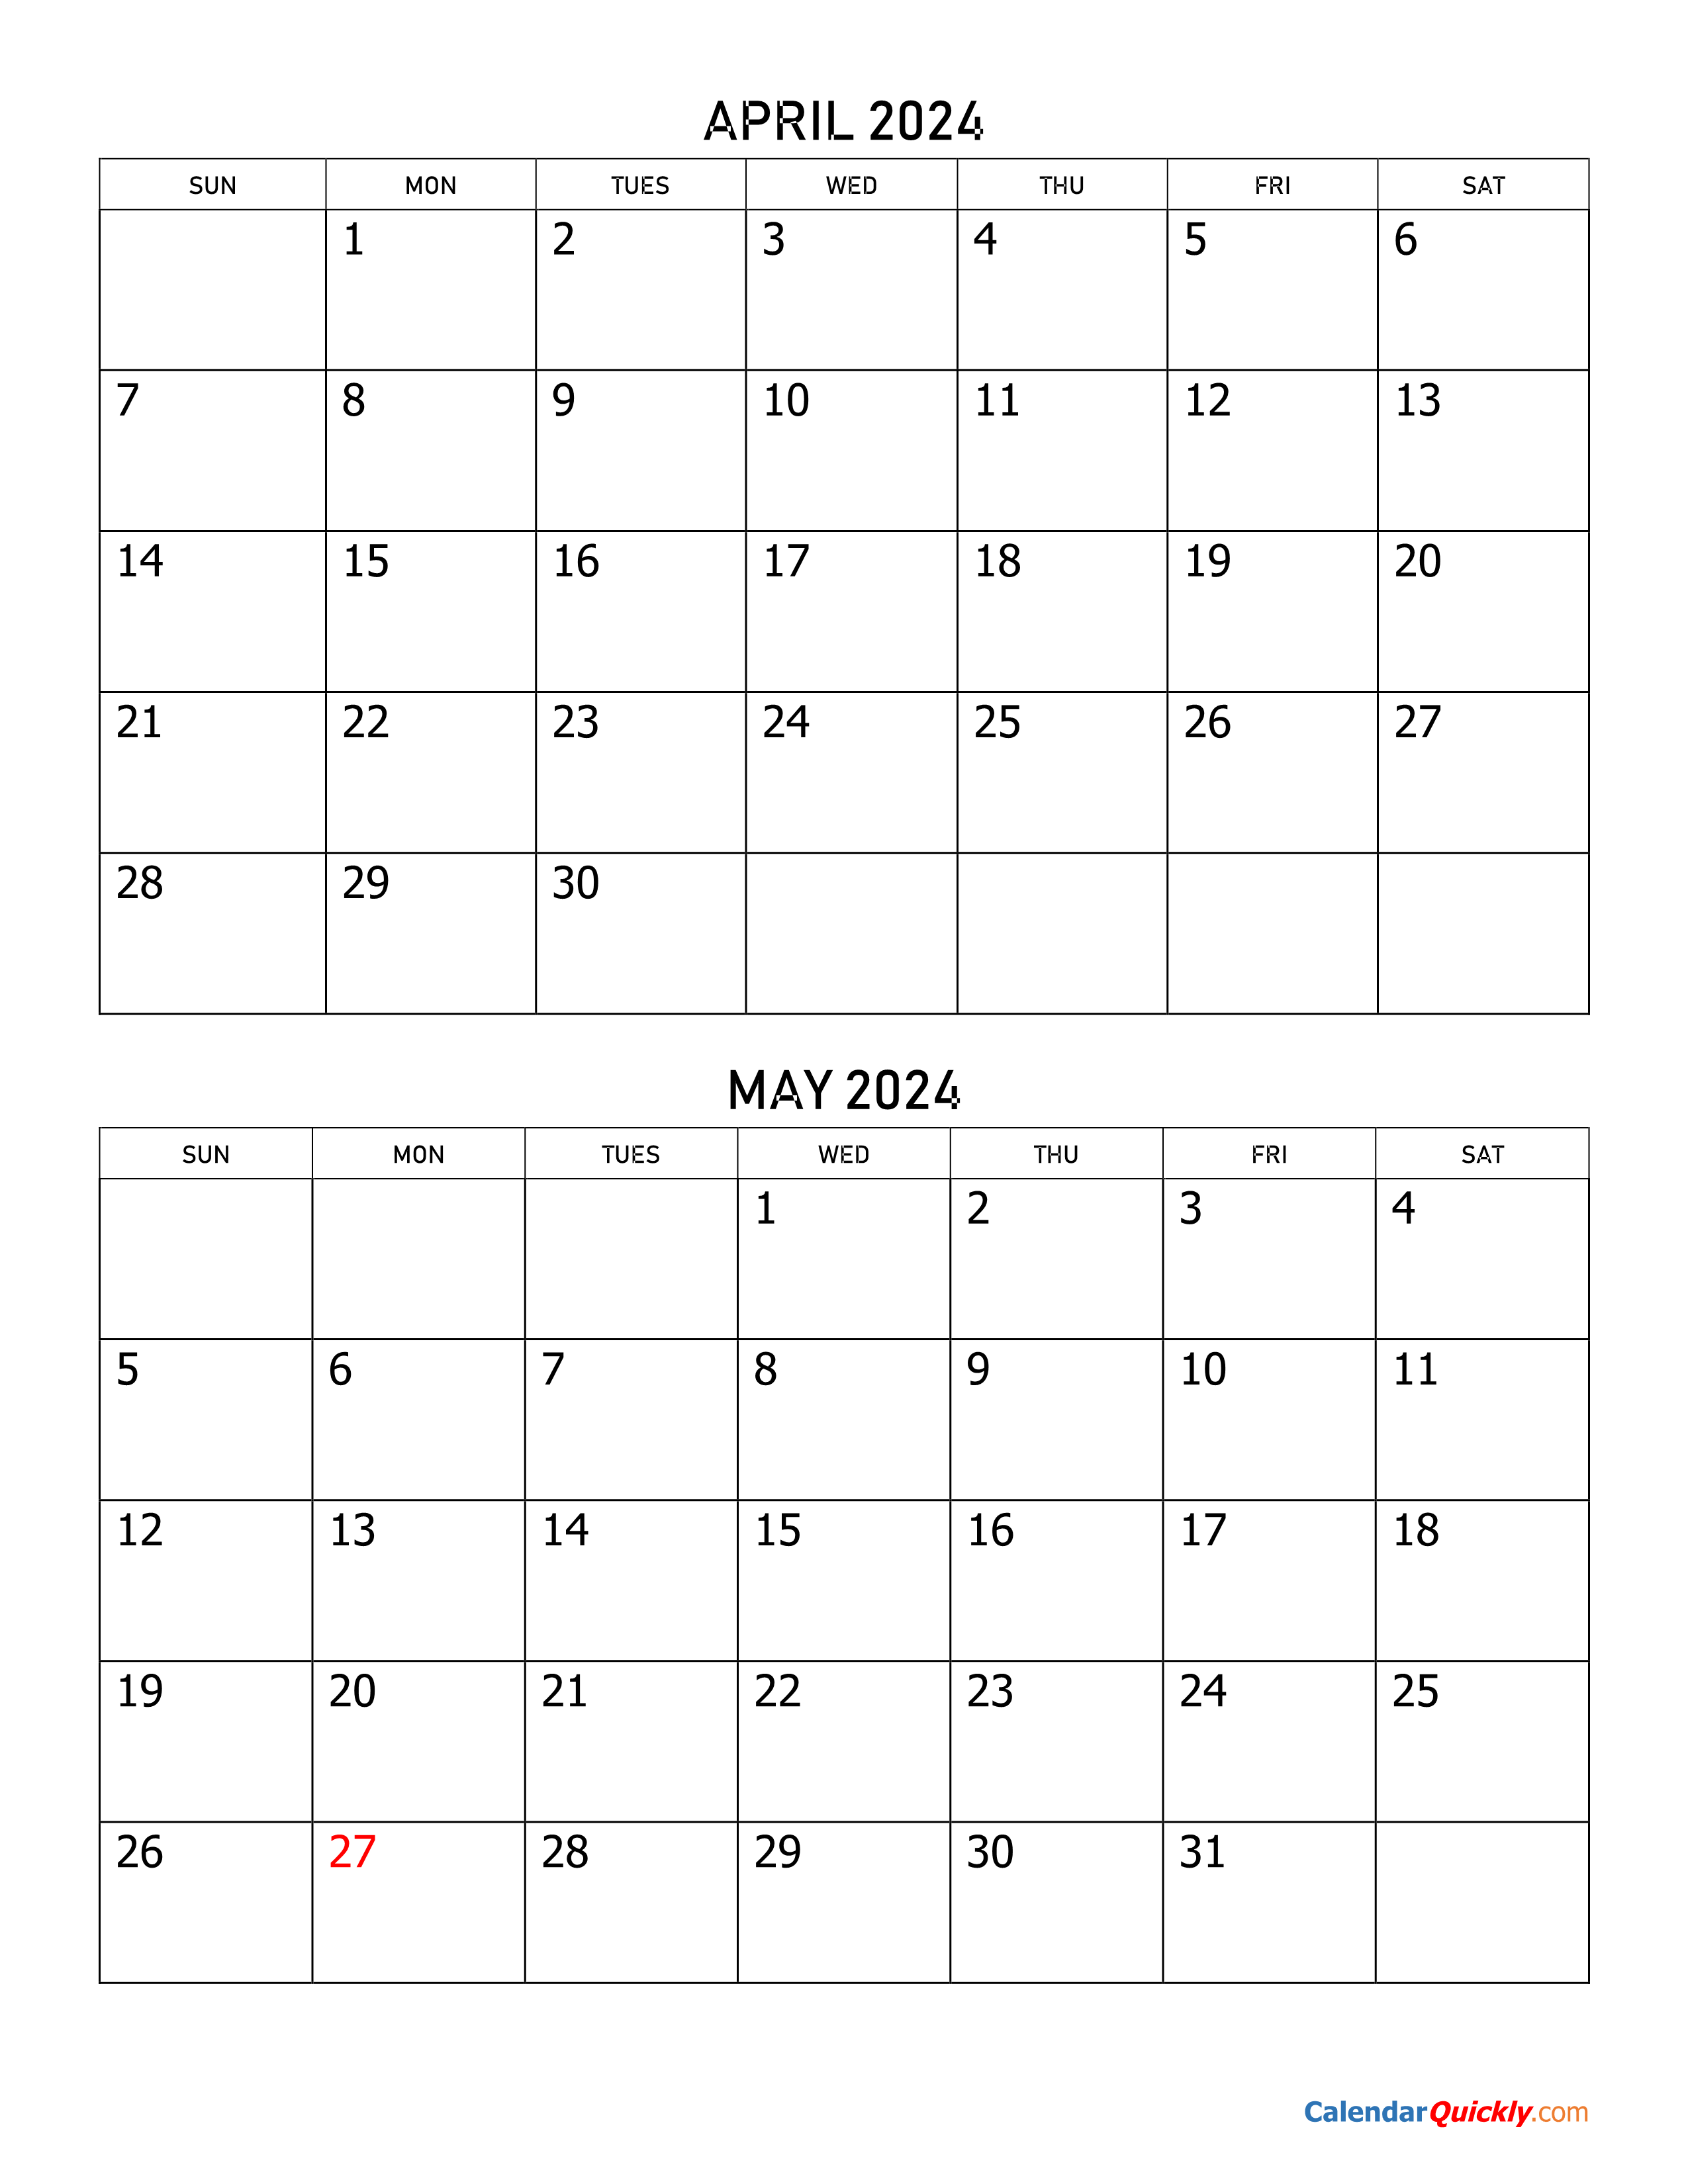 May 2024 Calendar Printable Free Printable Templates By Nora - Free Printable 2024 May Calendar